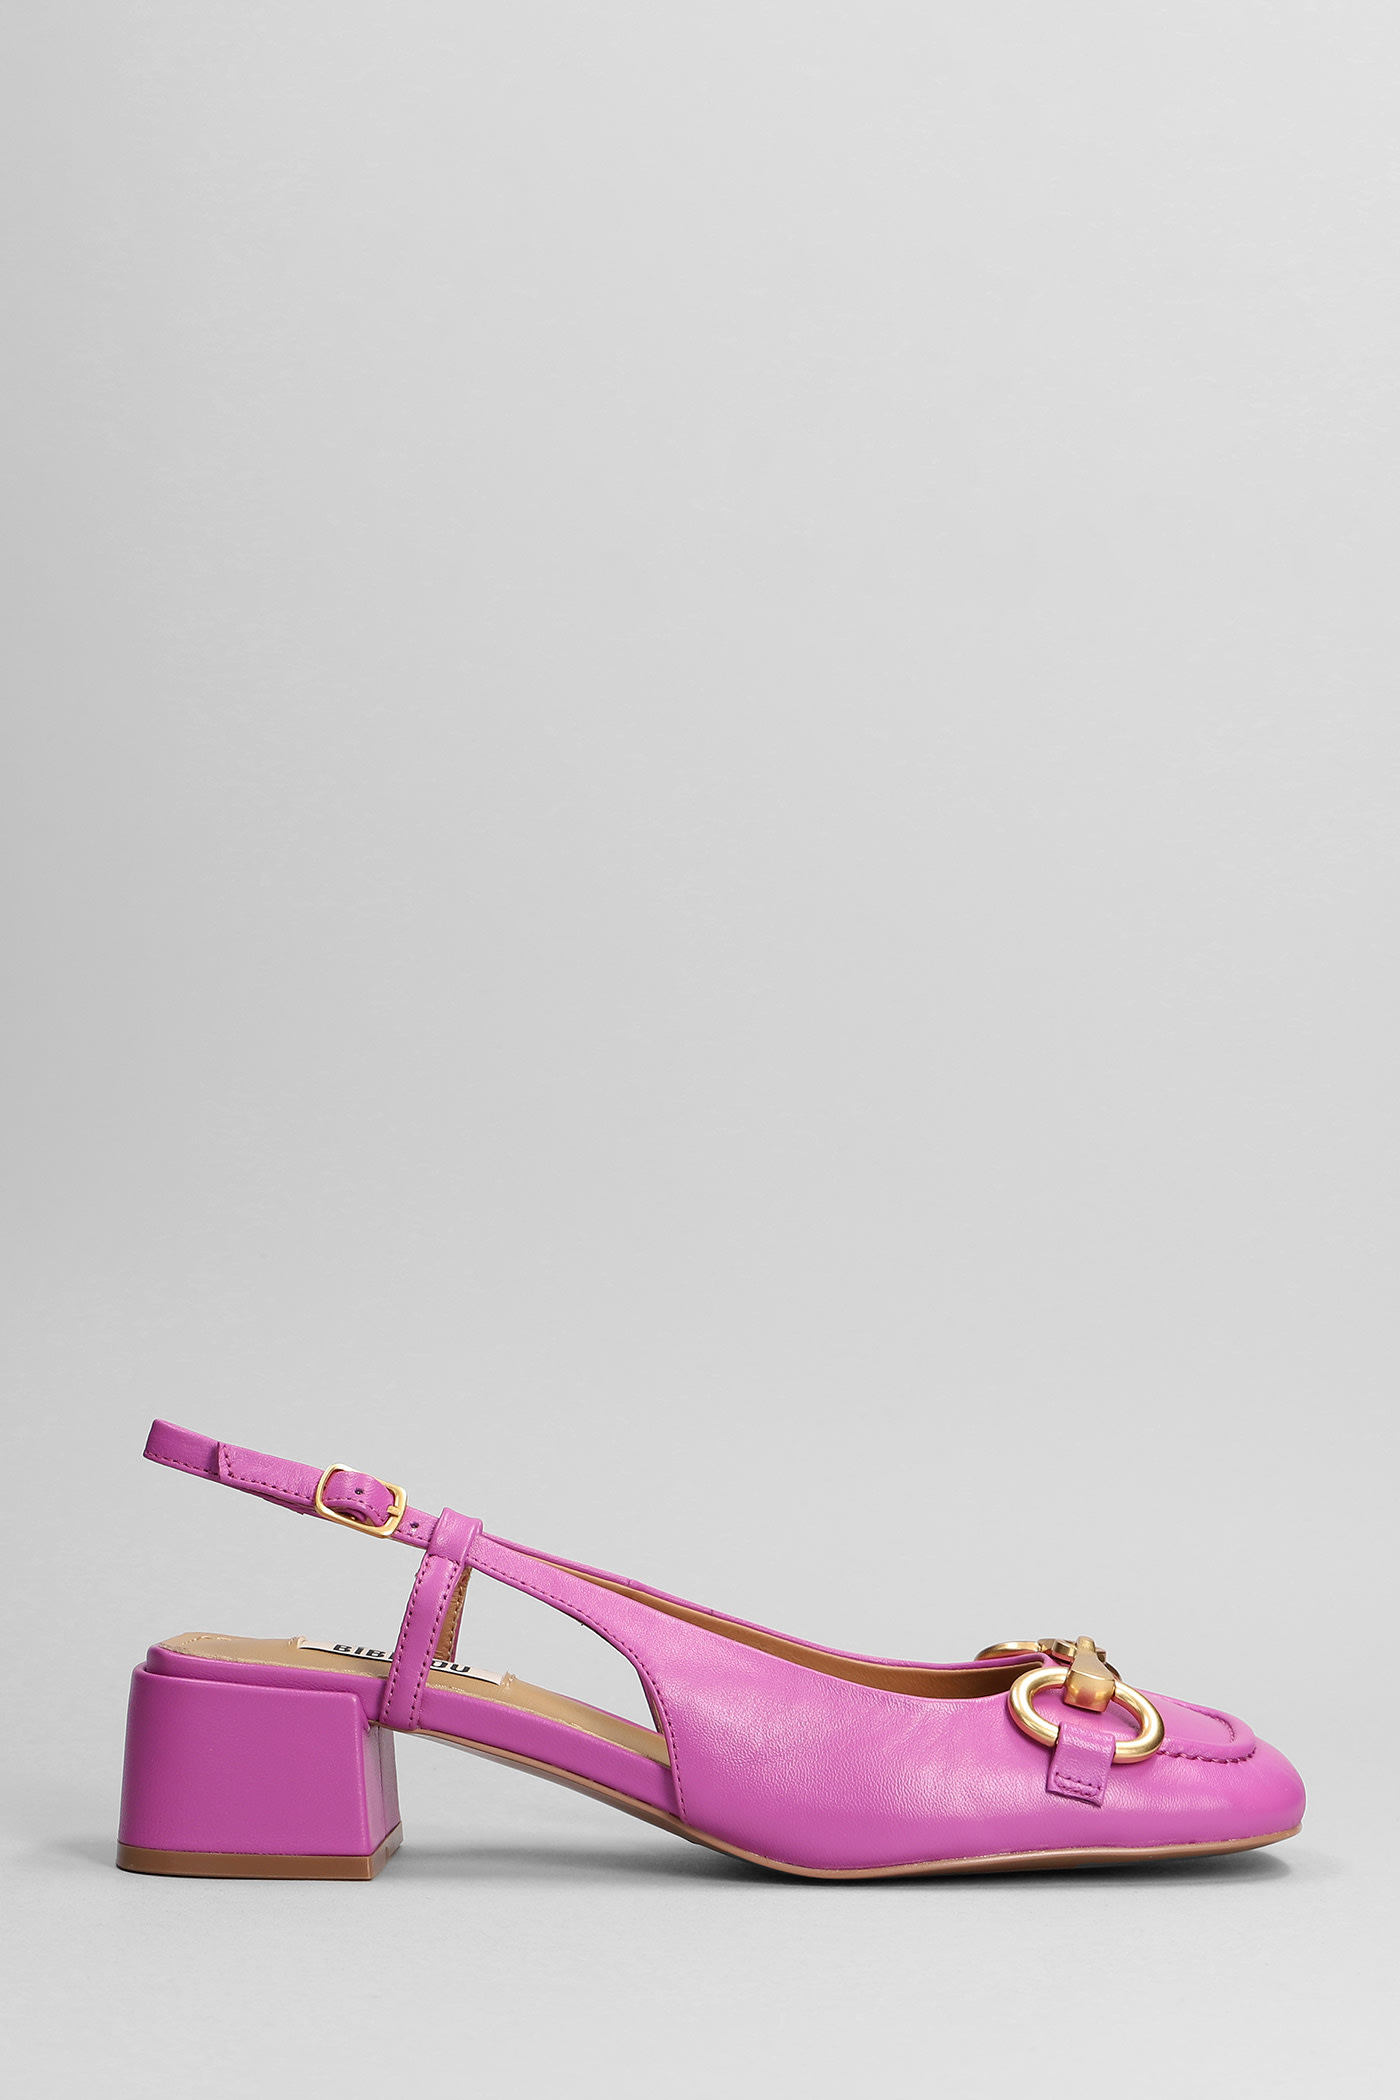 Bibi Lou Sandals In Viola Leather